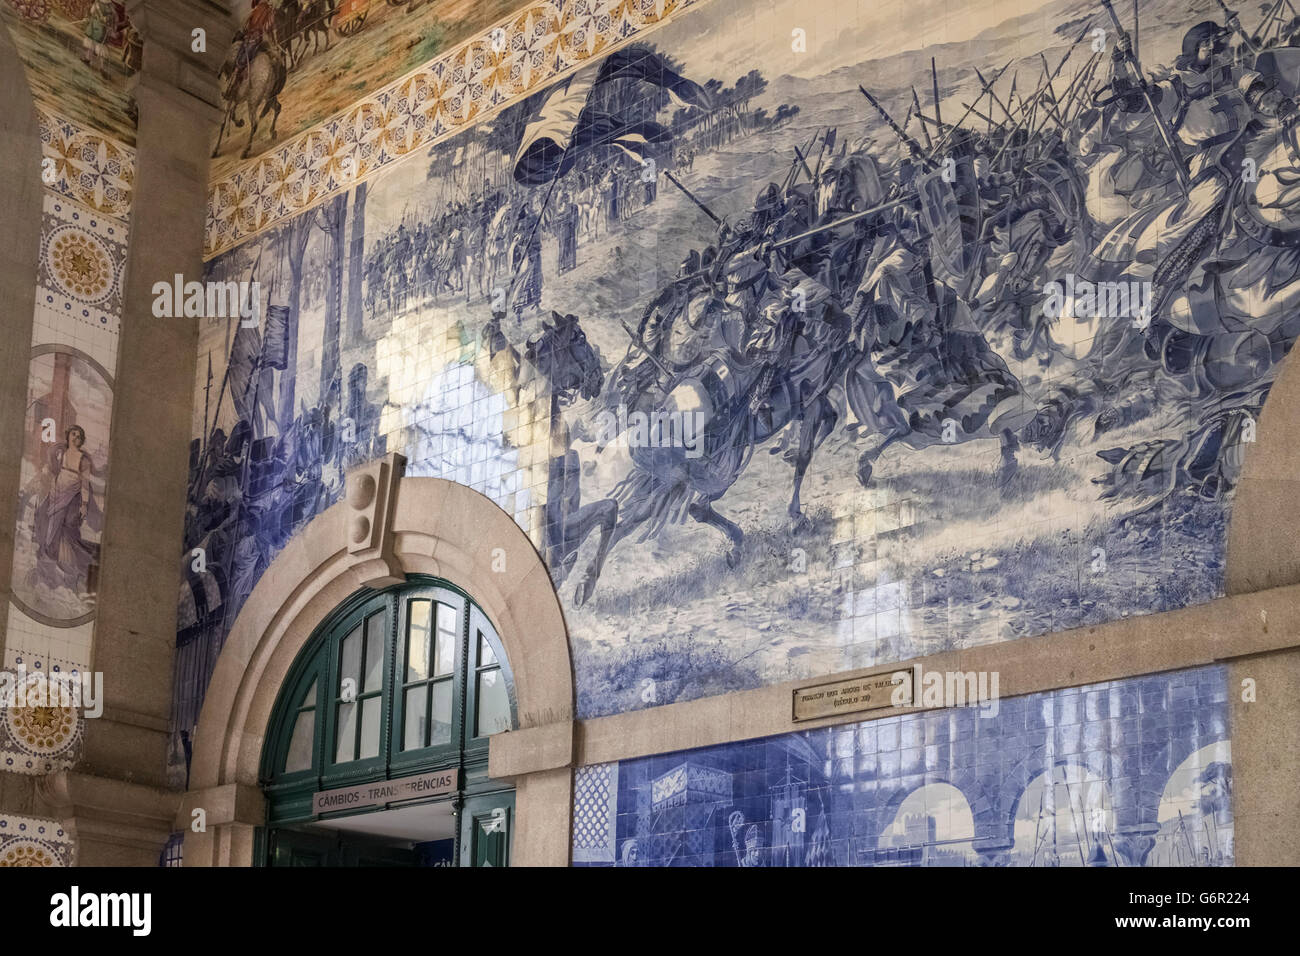 Intérieur de la gare de São Bento, Porto, Portugal, connue pour ses tuiles azulejo représentant des scènes historiques du Portugal. Banque D'Images